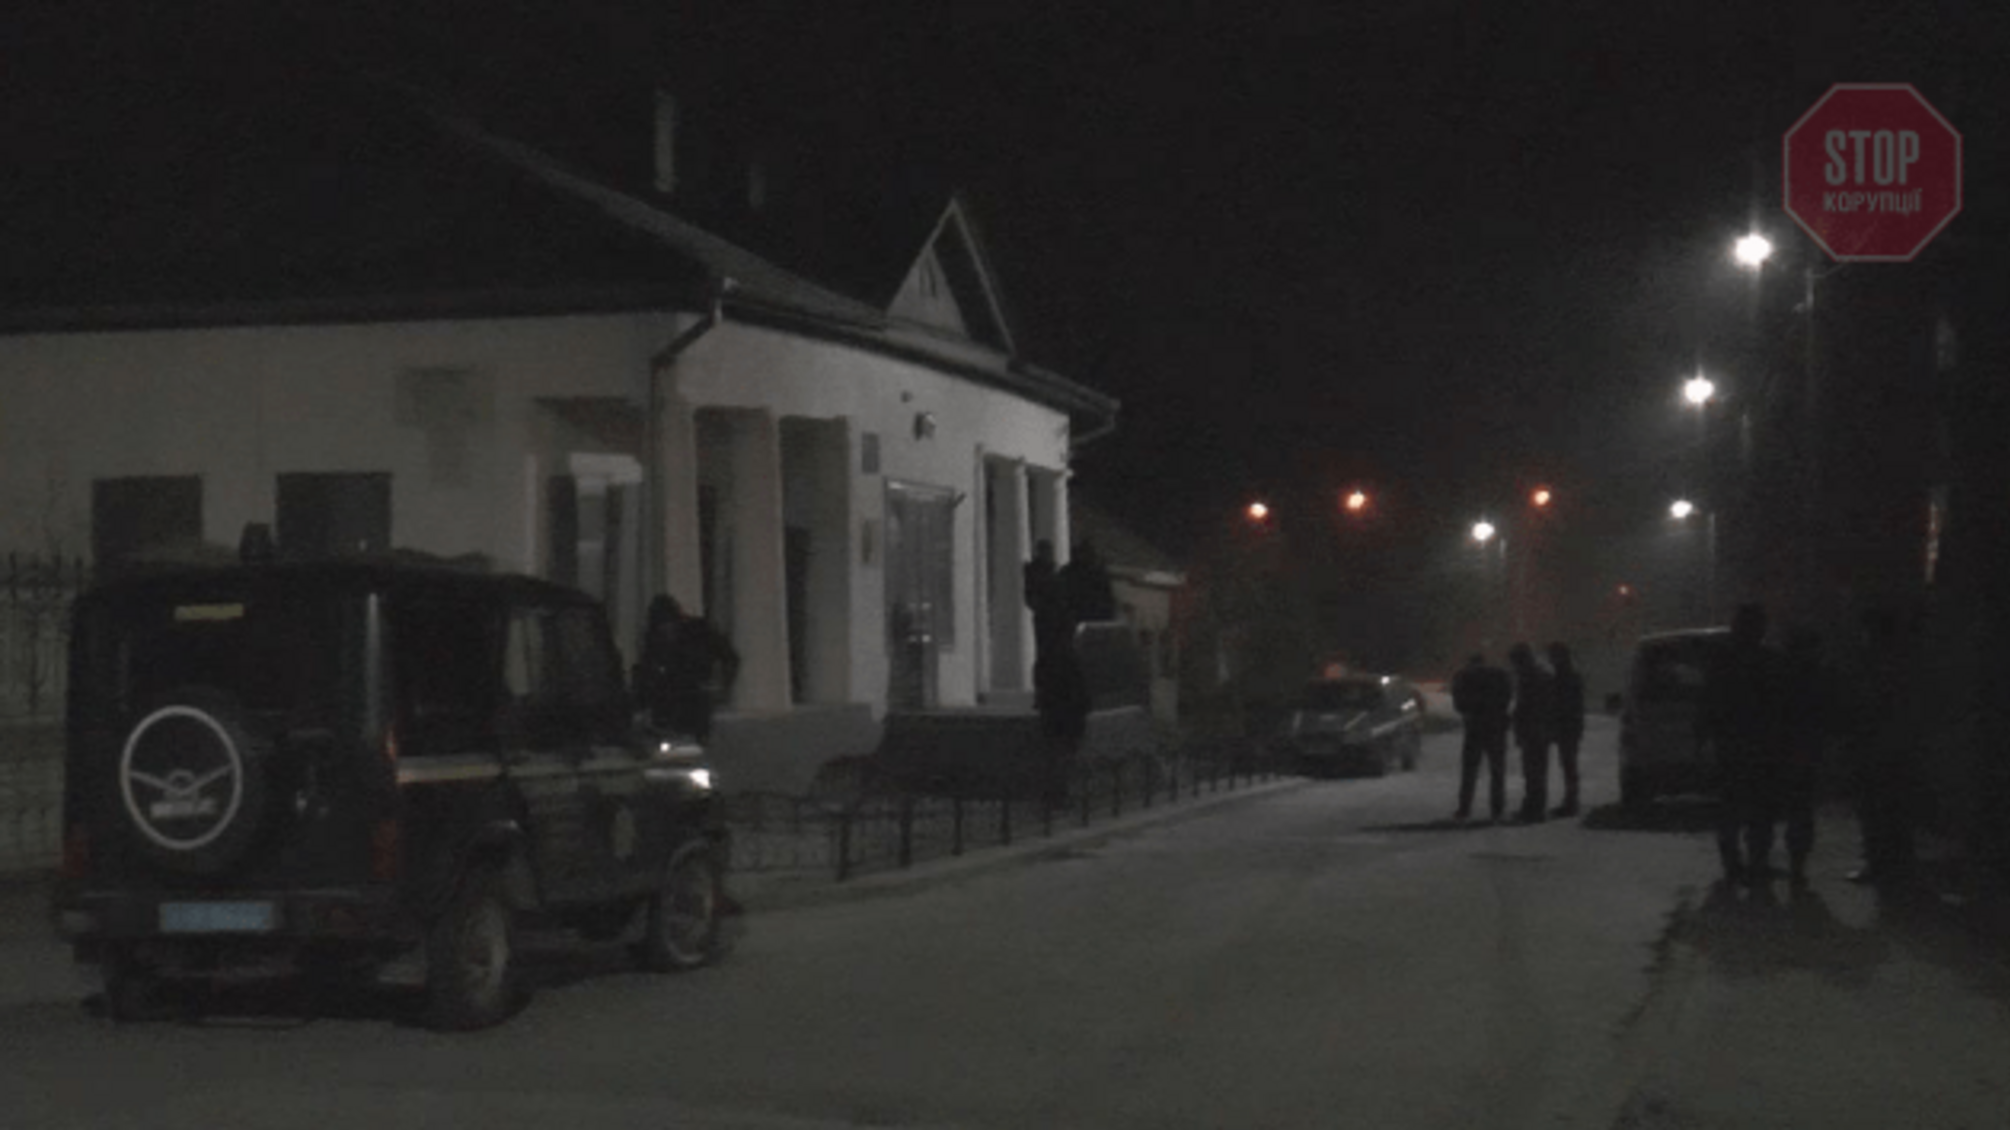 У Сумах невідомі намагалися пограбувати музей Чехова (фото)